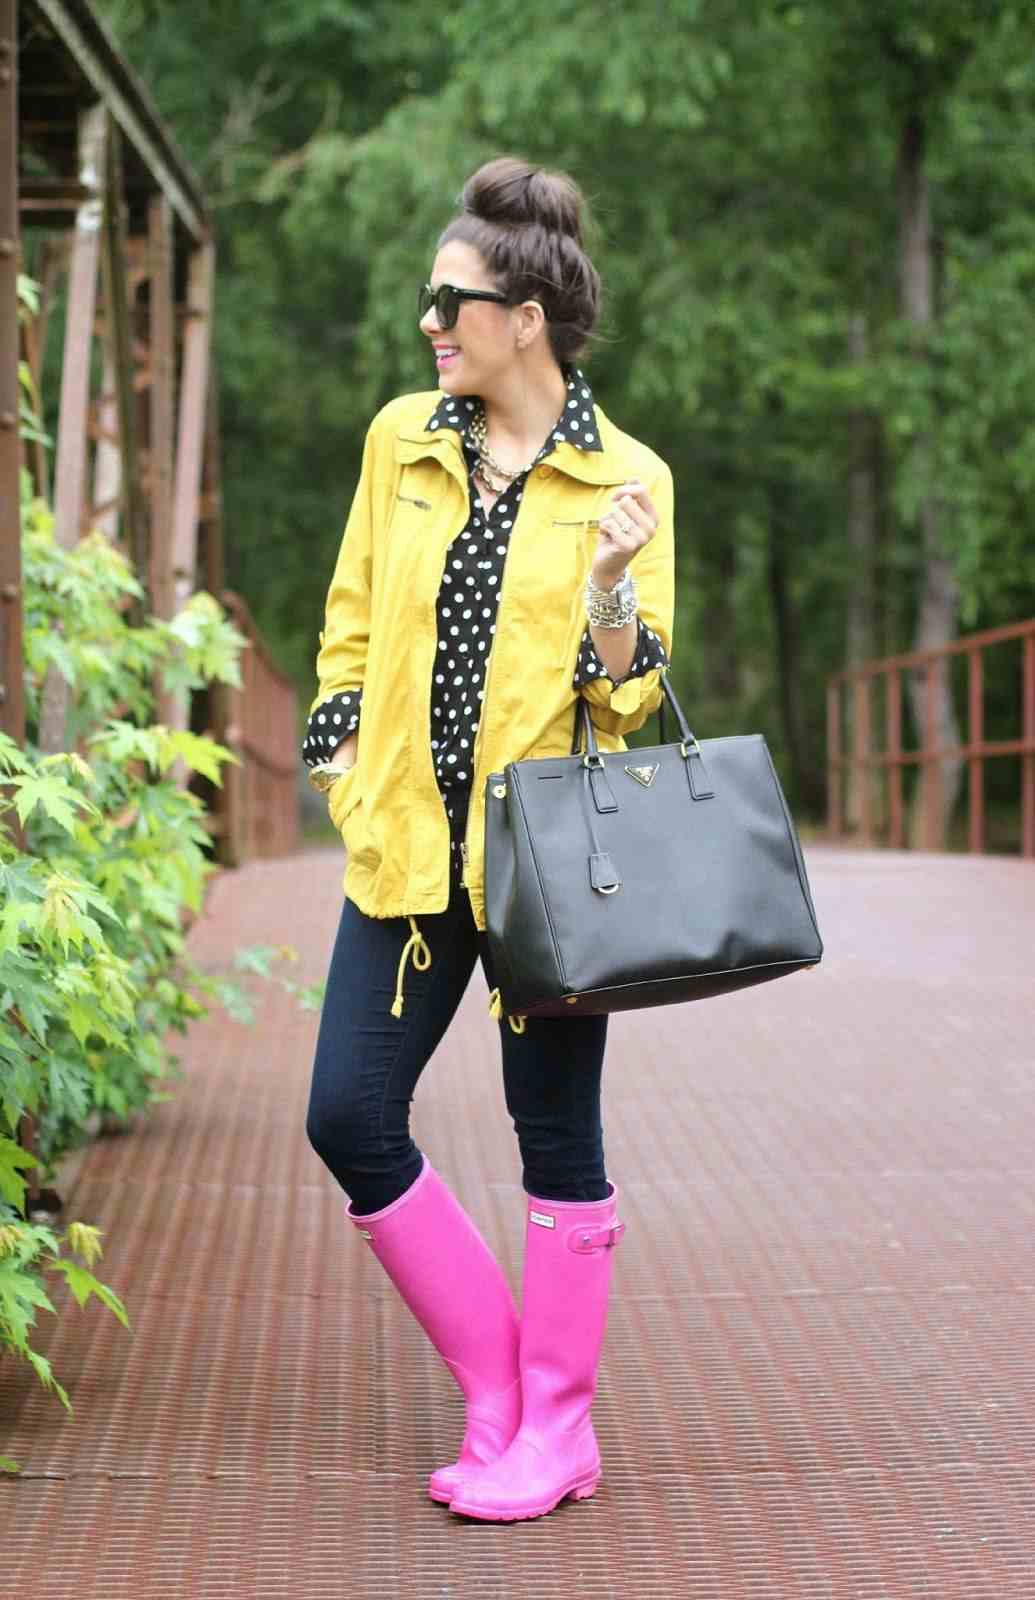 Regenjacke in Gelb, gepunktete Bluse, rosa Gummistiefel und enge Jeans